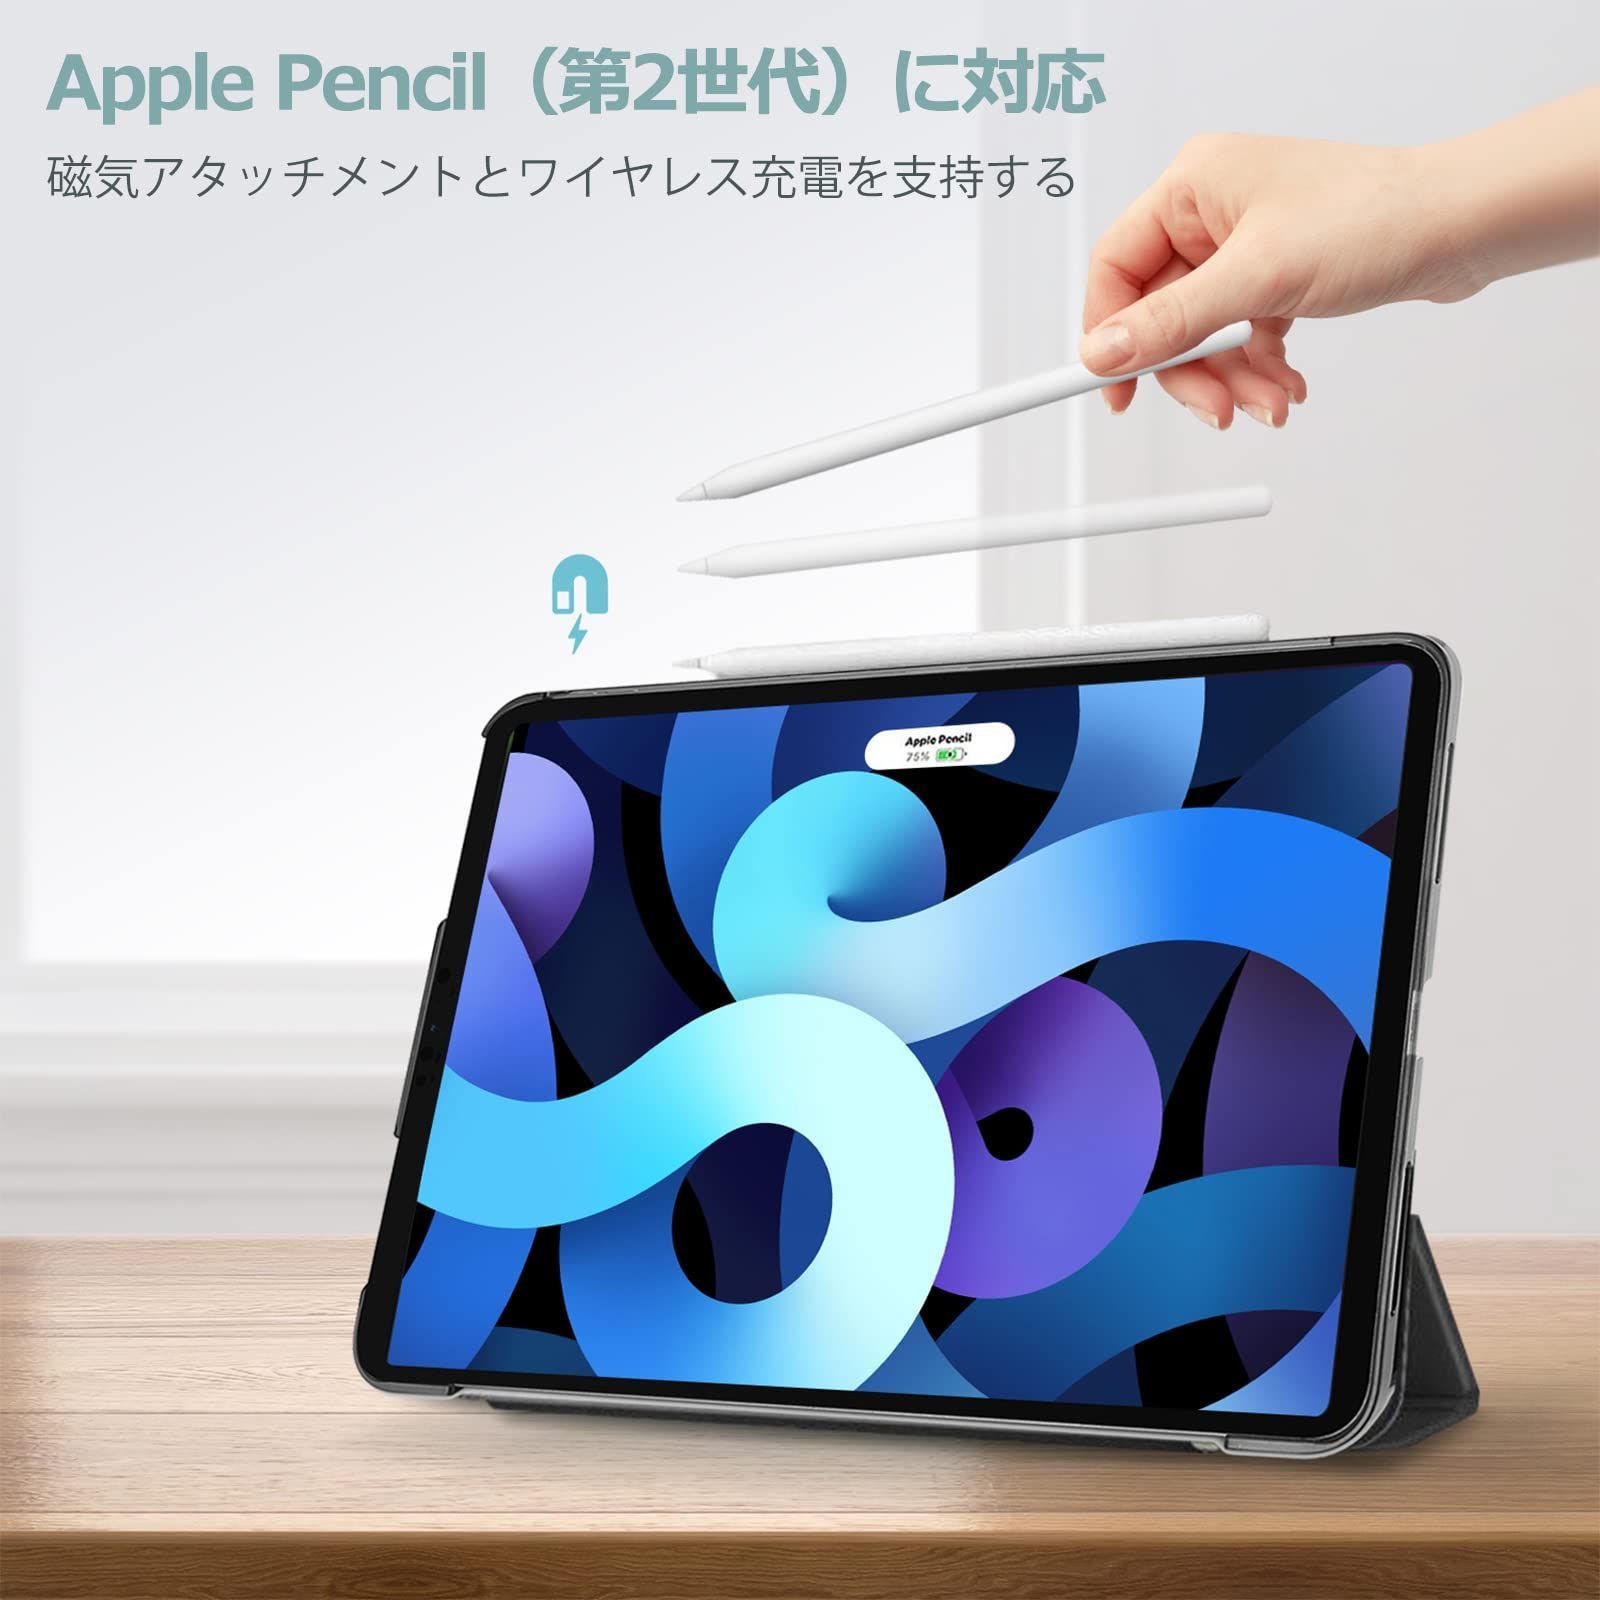 日本規格iPad Air (第4世代)とApple Pencil(第2世代)とケース iPadアクセサリー